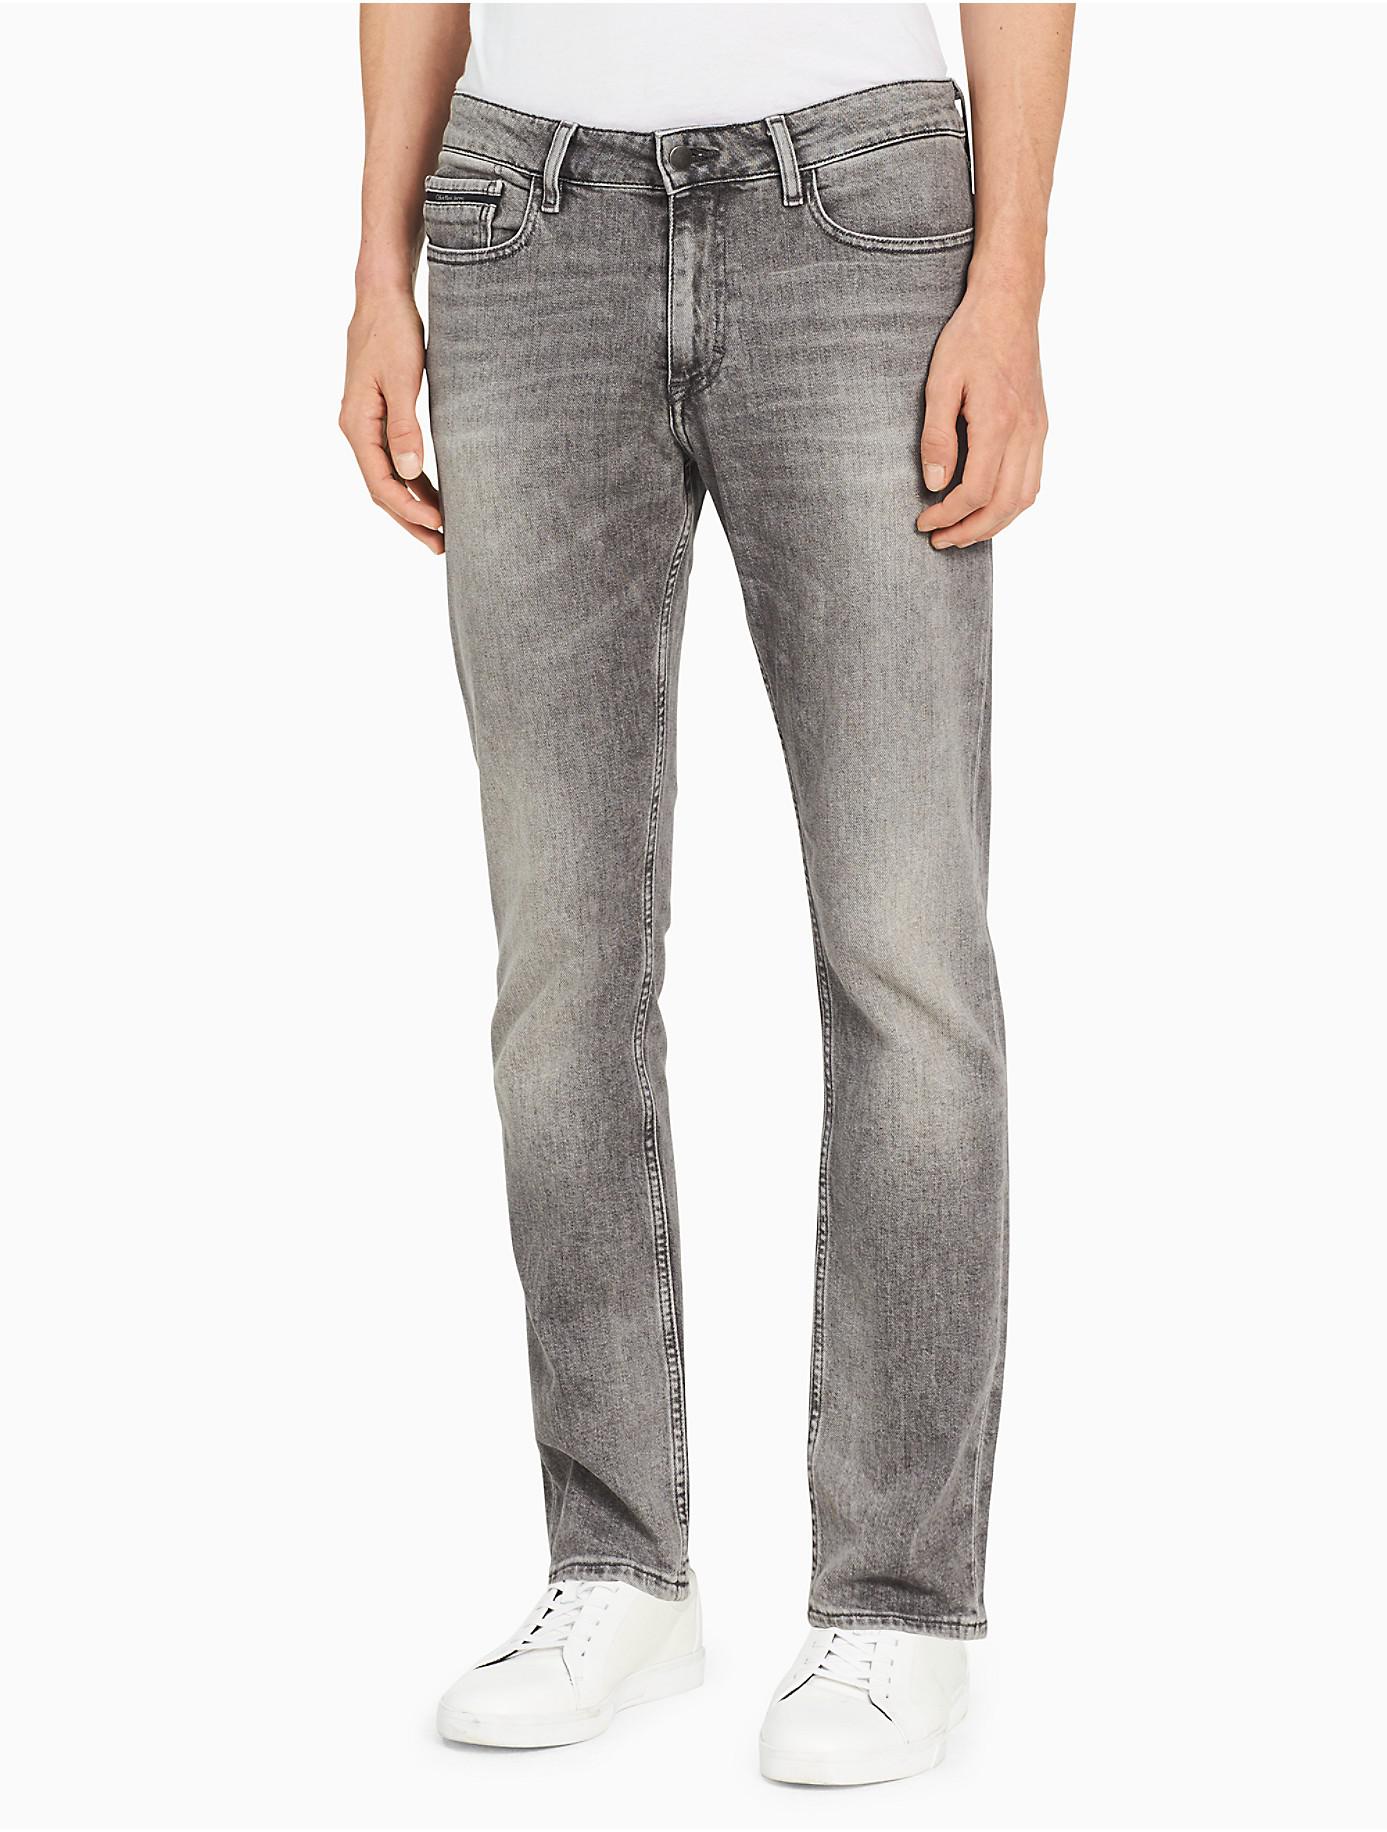 Introducir 66+ imagen calvin klein gray jeans mens